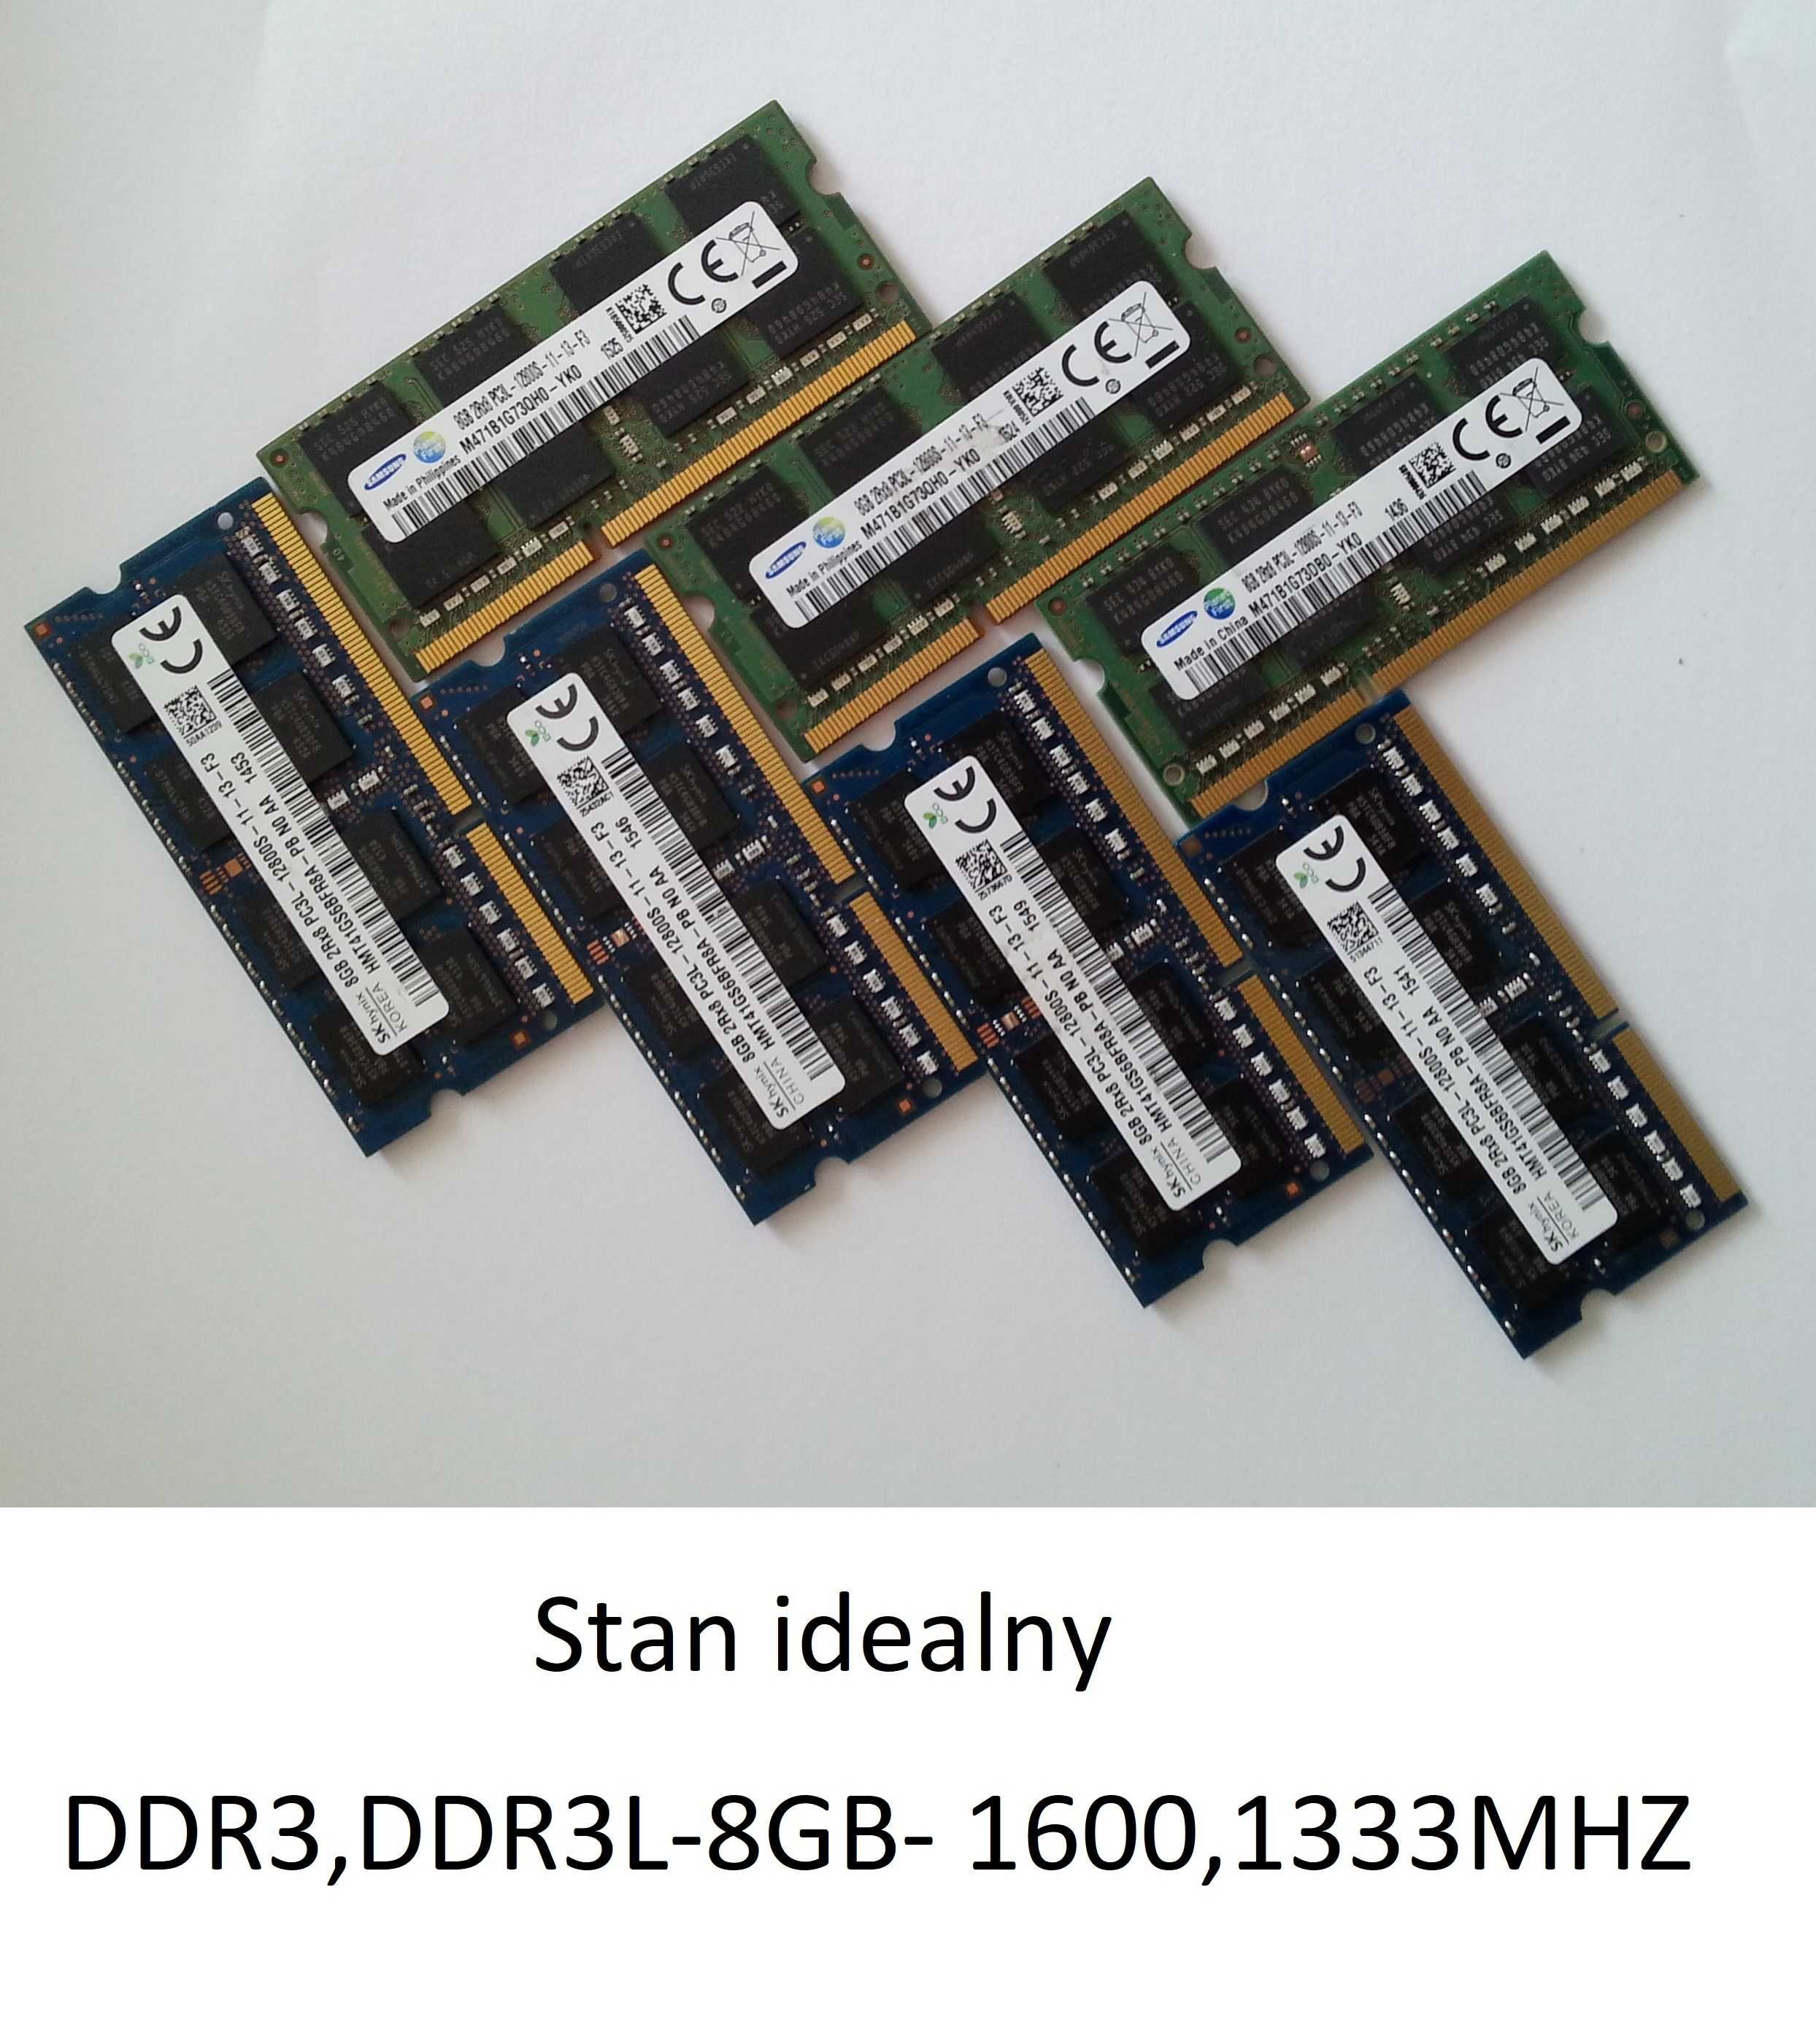 RAM do każdego modelu laptopa-DDR2 2GB, DDR3,DDR4-2,4,8GB.Polecam.